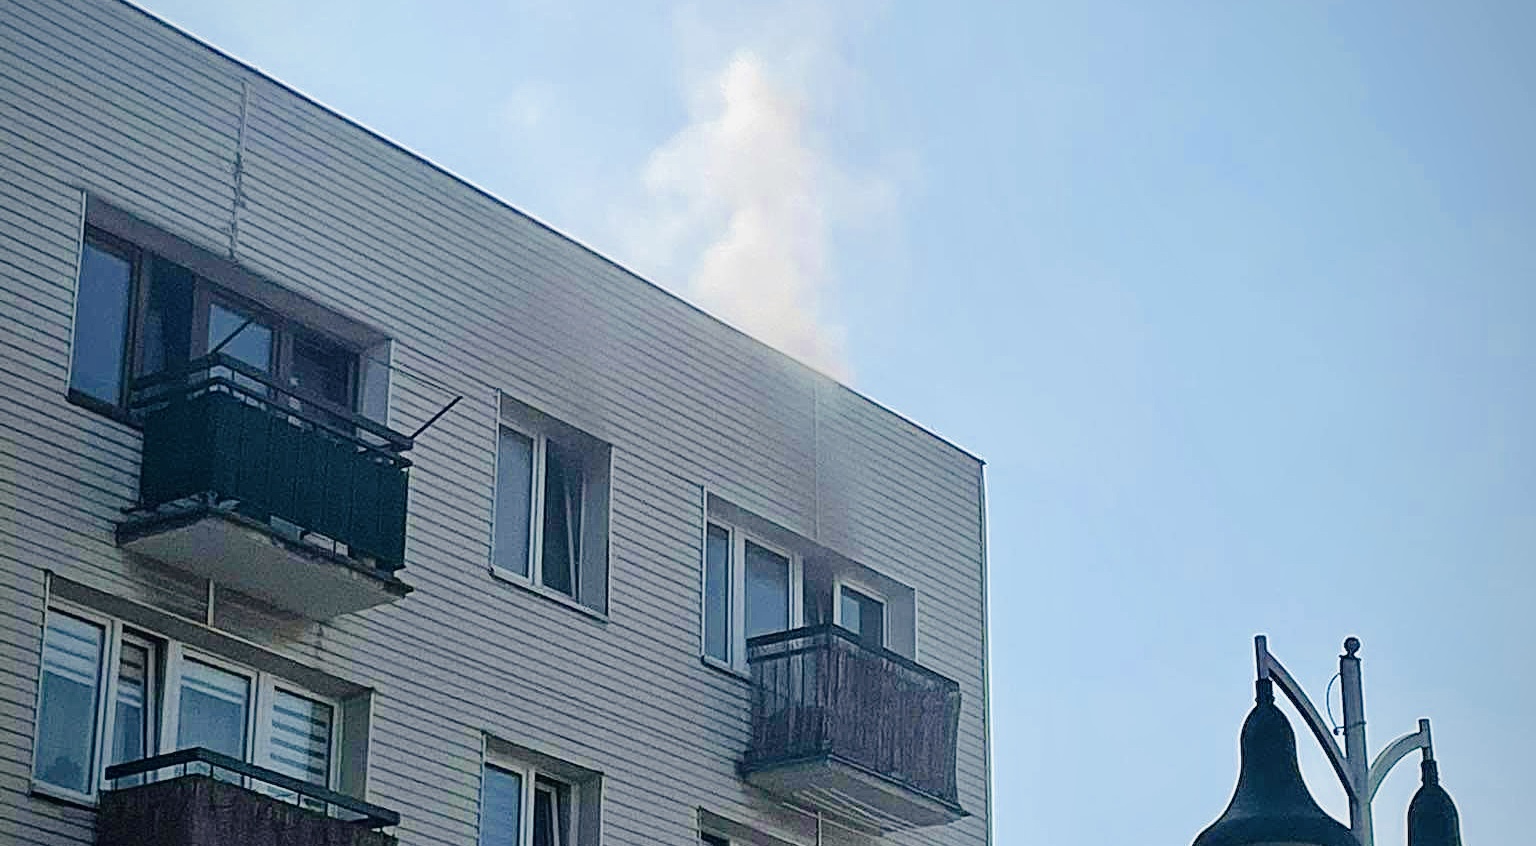 WOŁOMIN. Pożar w bloku na trzecim piętrze. Dym wydobywał się przez okna. 